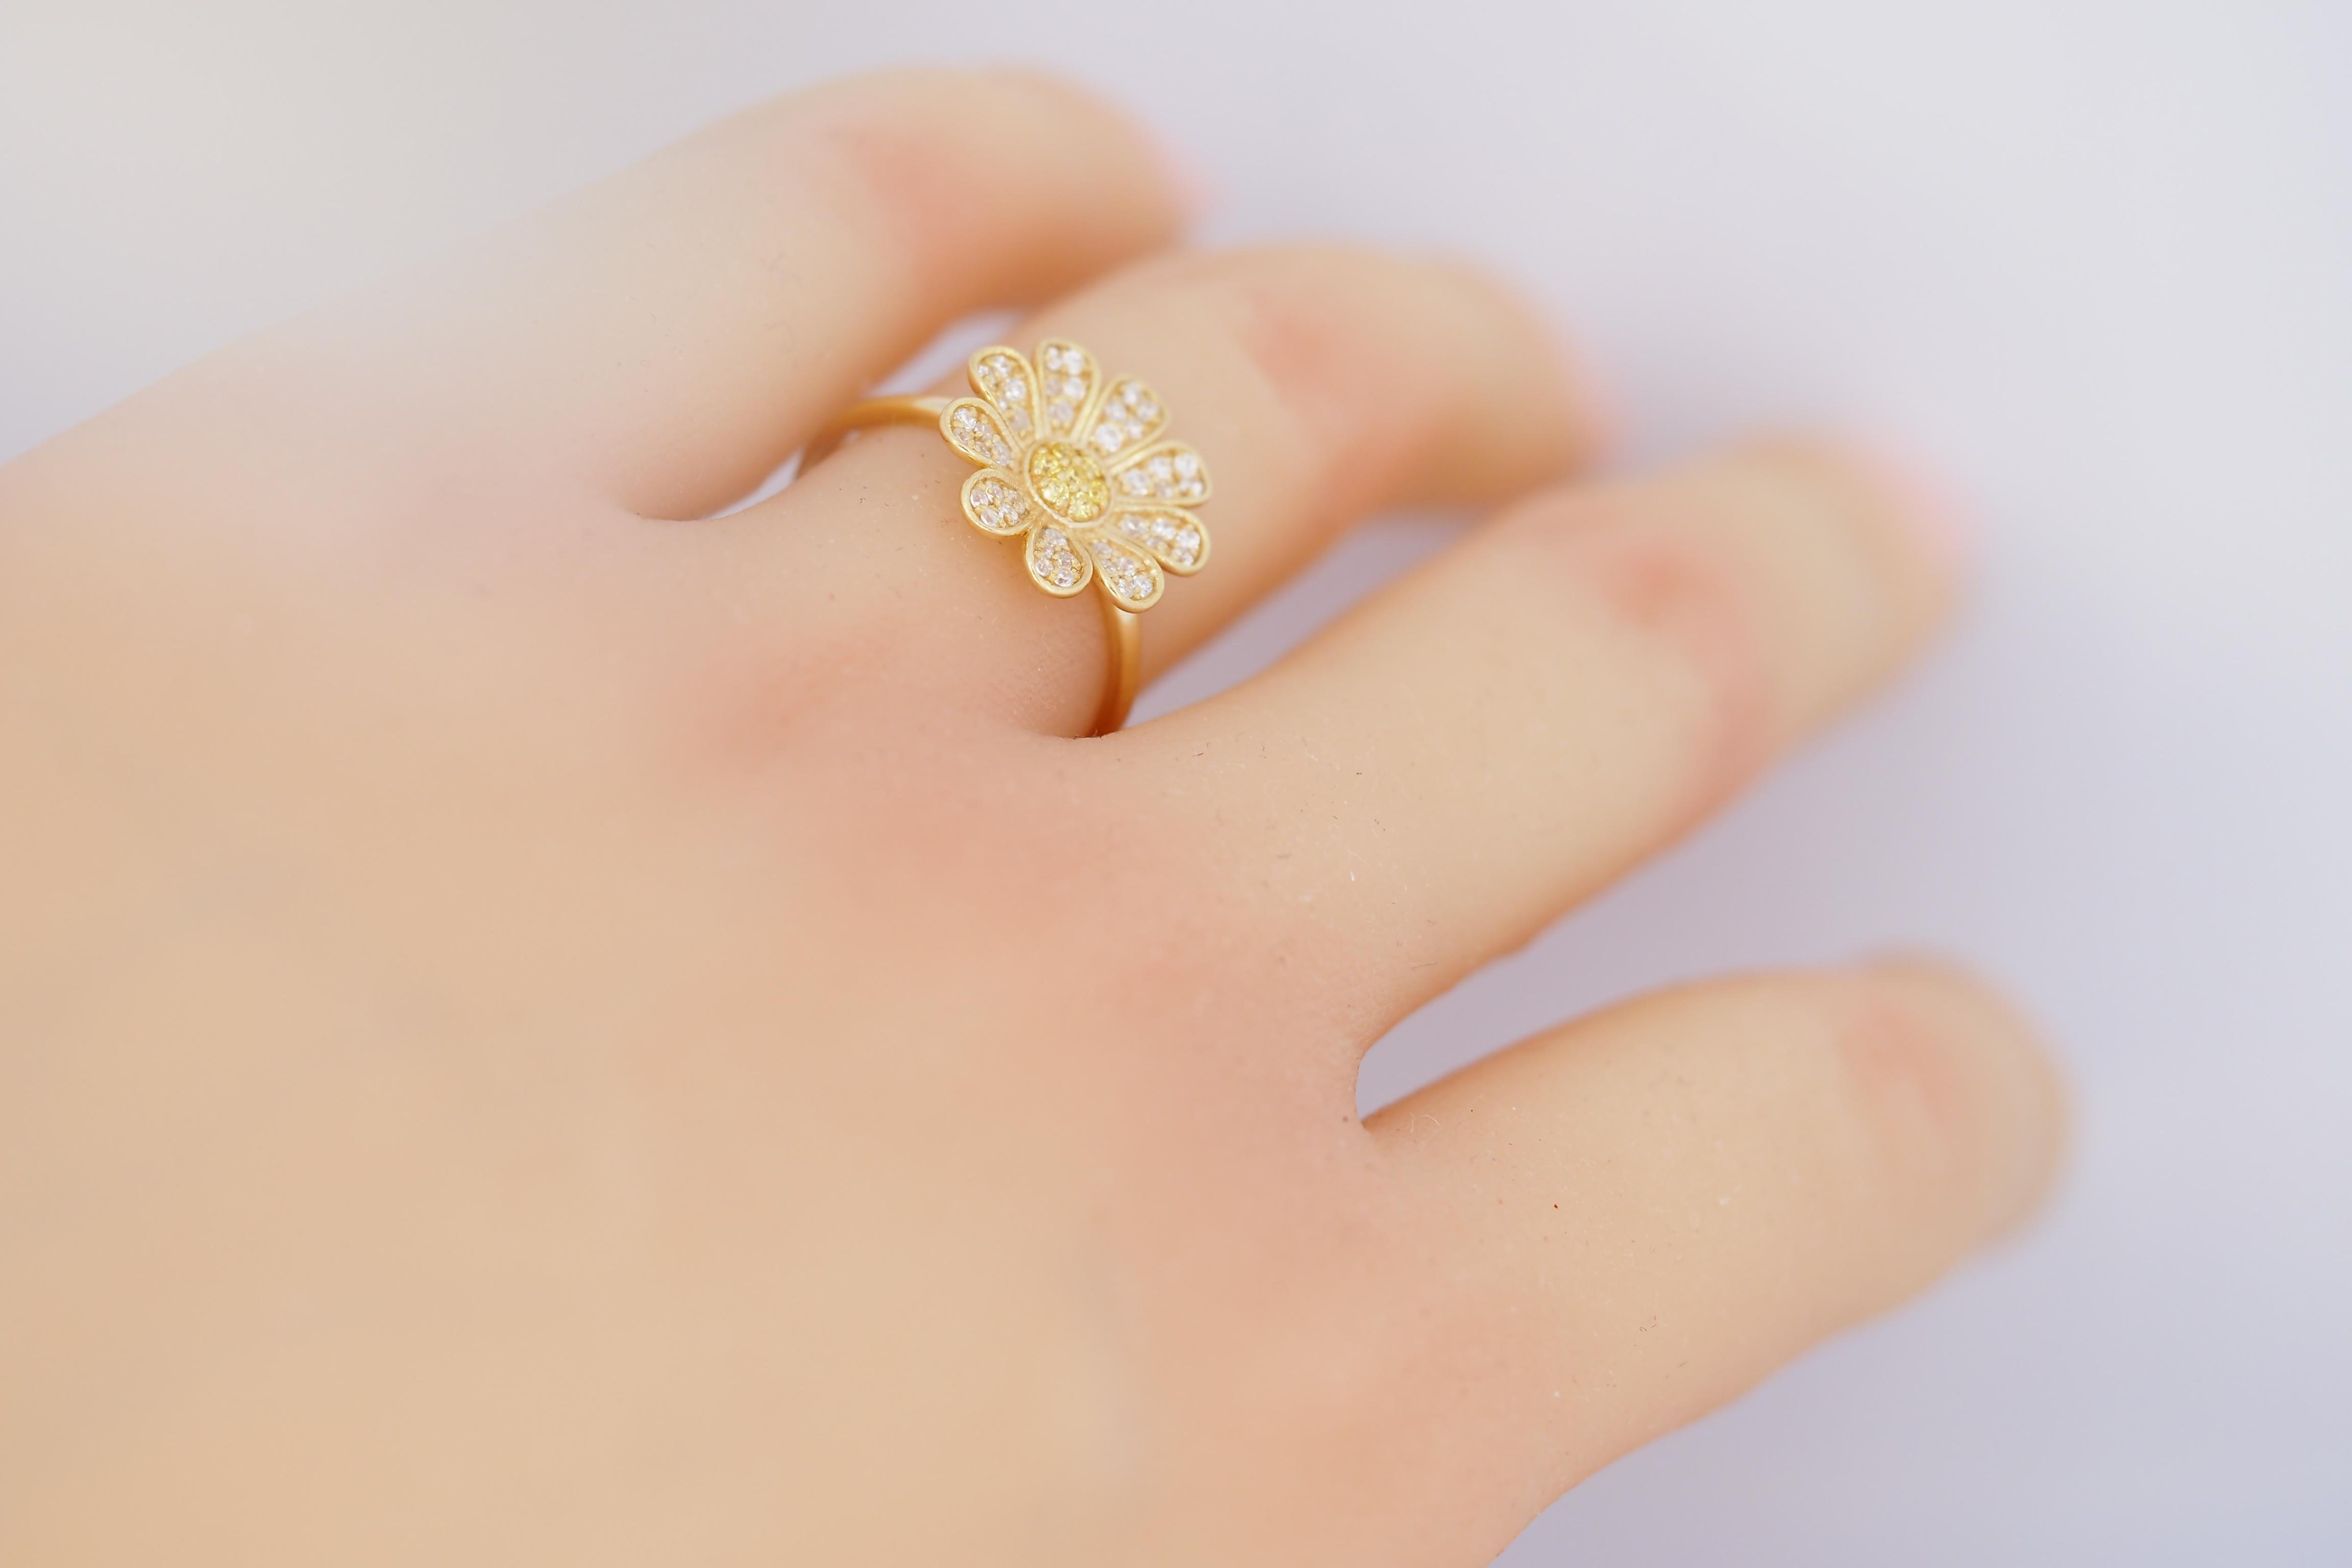 For Sale:  Daisy flower 14k gold ring.  6